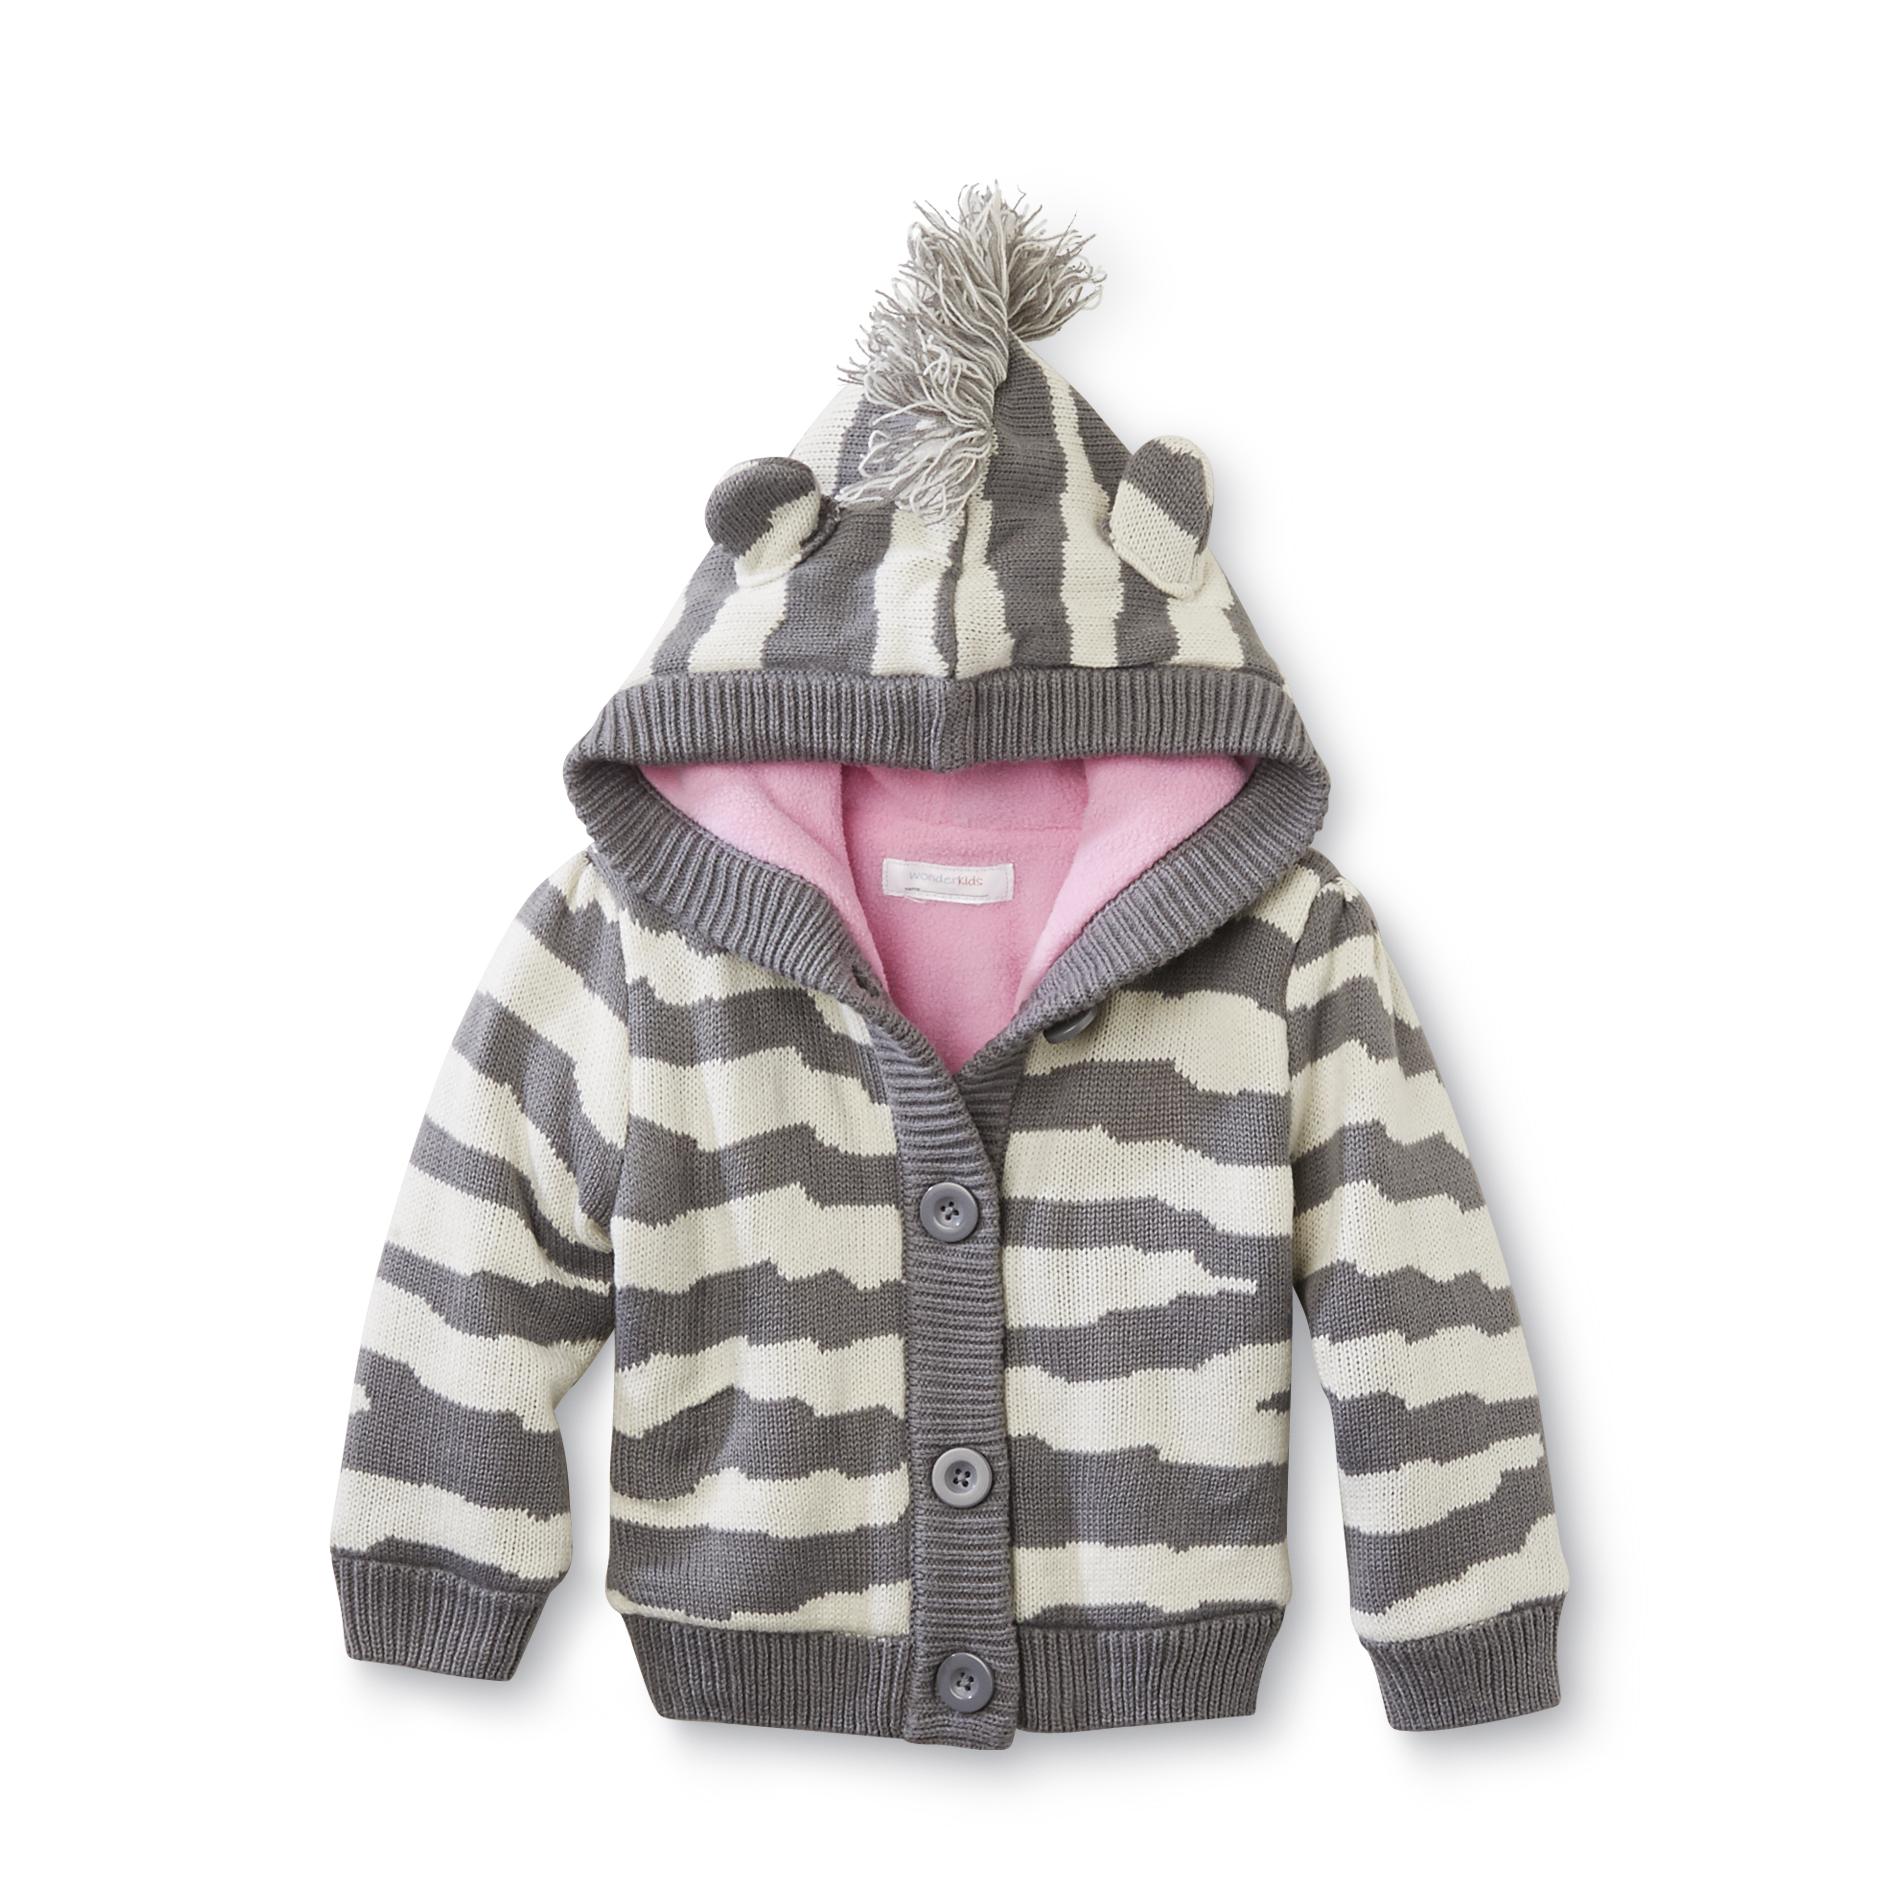 WonderKids Infant & Toddler Girl's Hooded Cardigan Sweater - Zebra